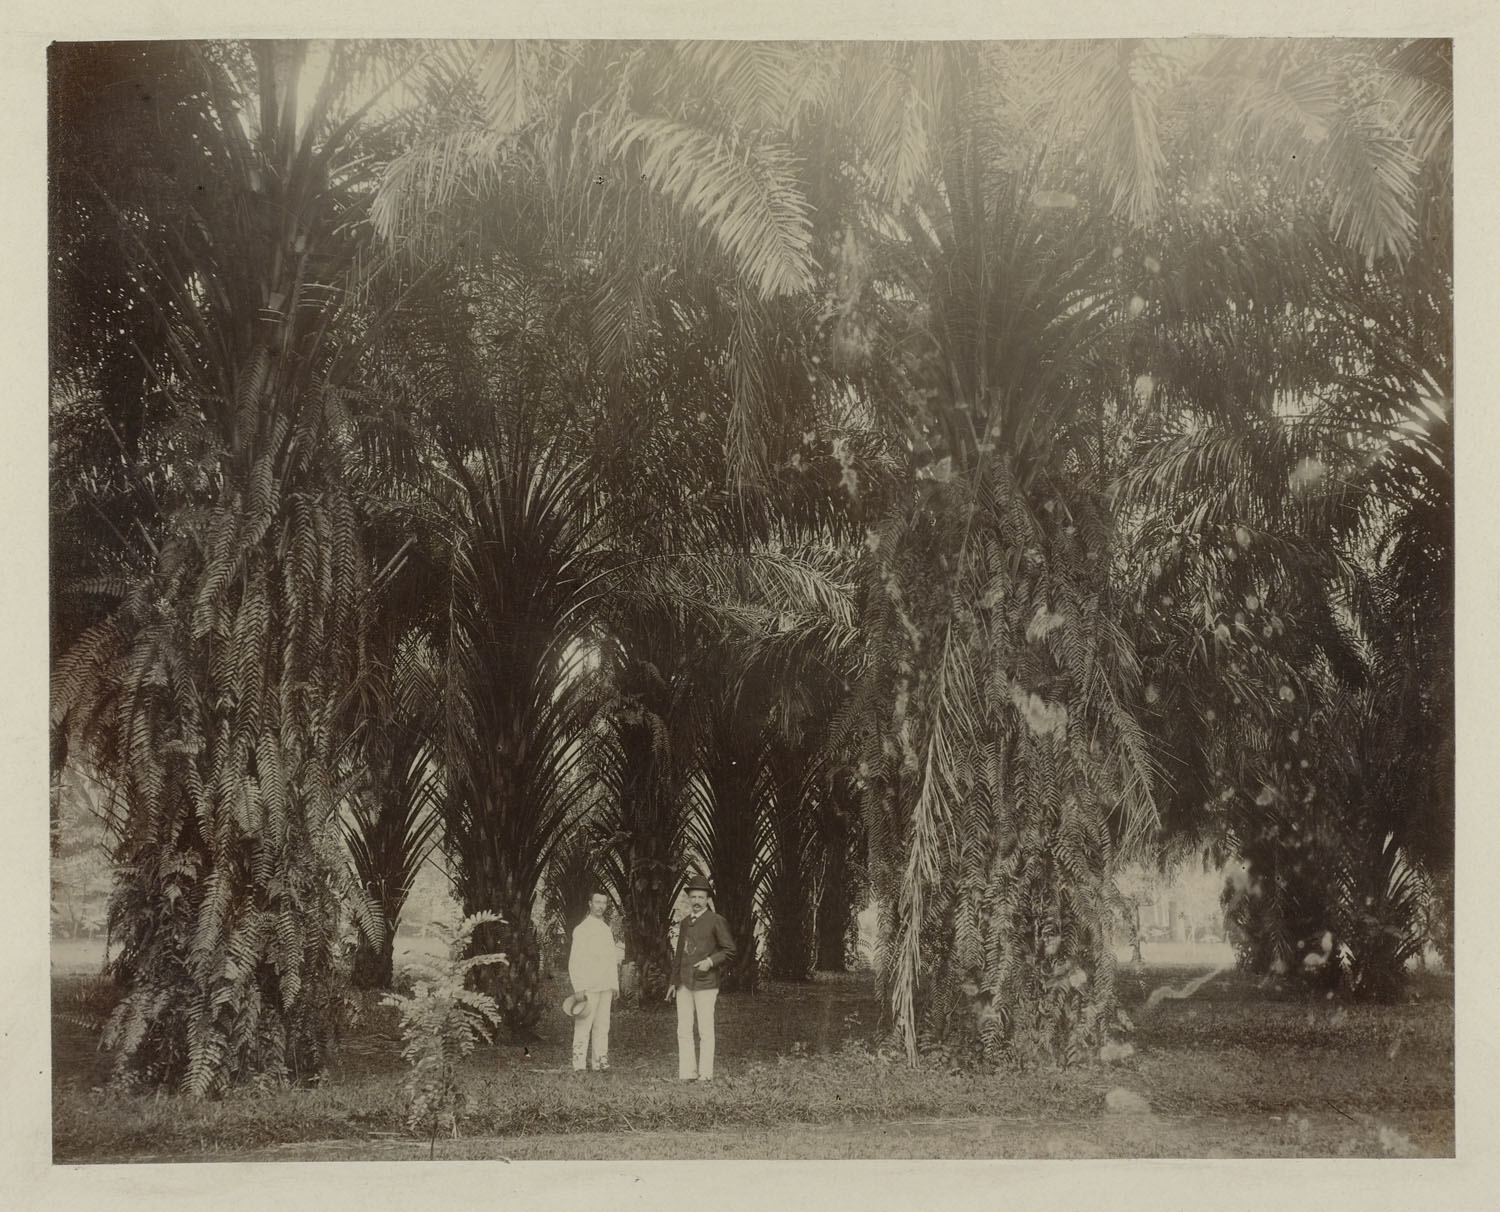 West-Java, Bogor 1899, Serie J.M. Janse, fotograaf onbekend, RV-A143-142